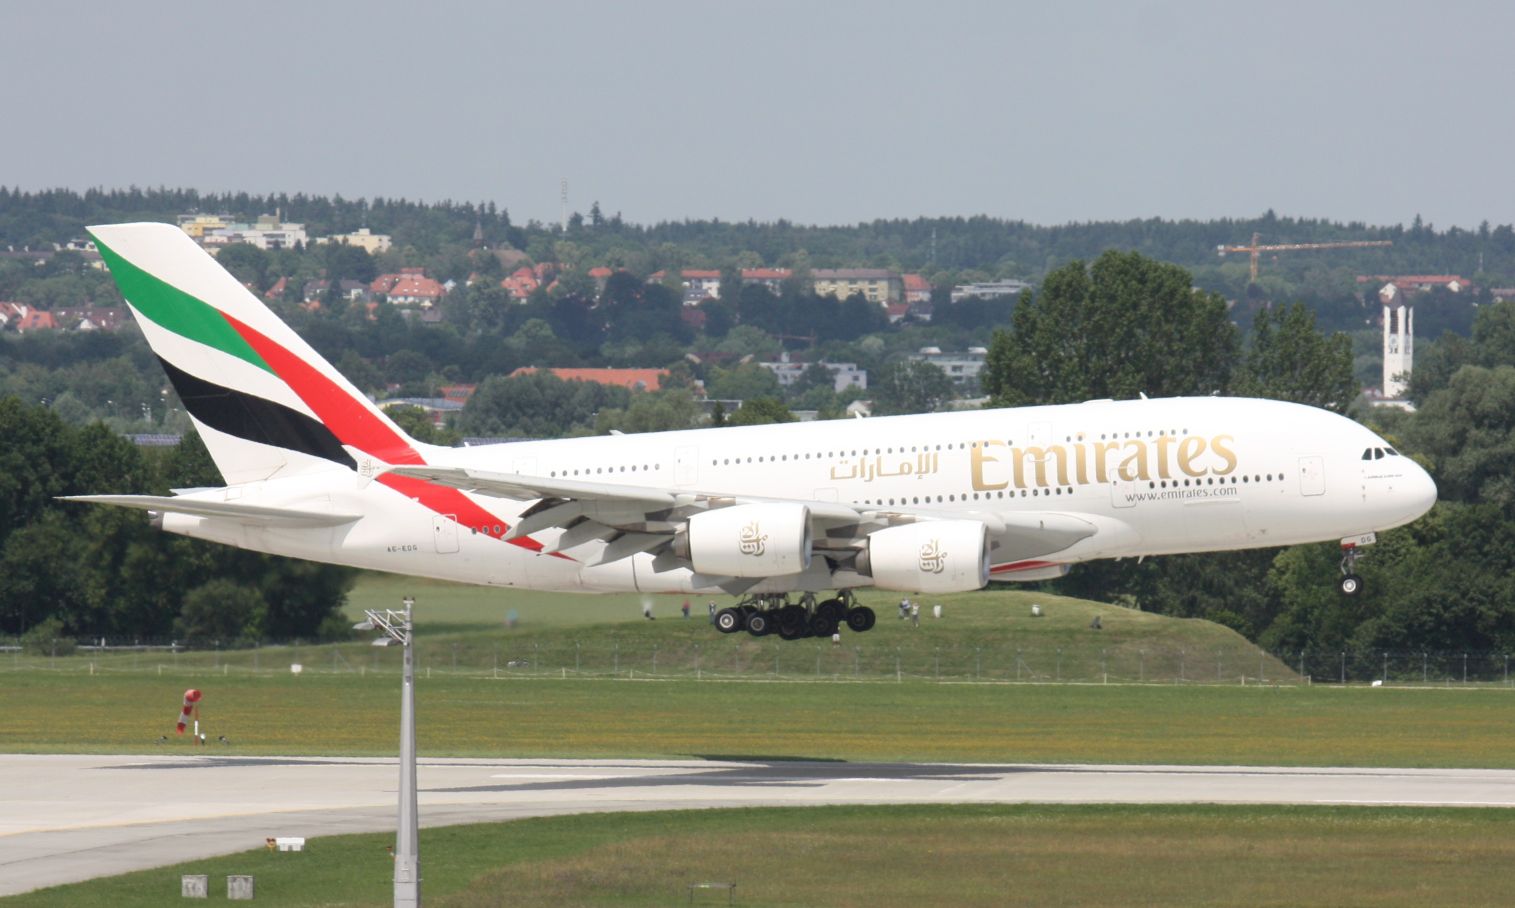 Az Emirates most hatvan A380-ast repül, még nyolcvanat rendelt, és többet is venne, ha lenne neo-változat